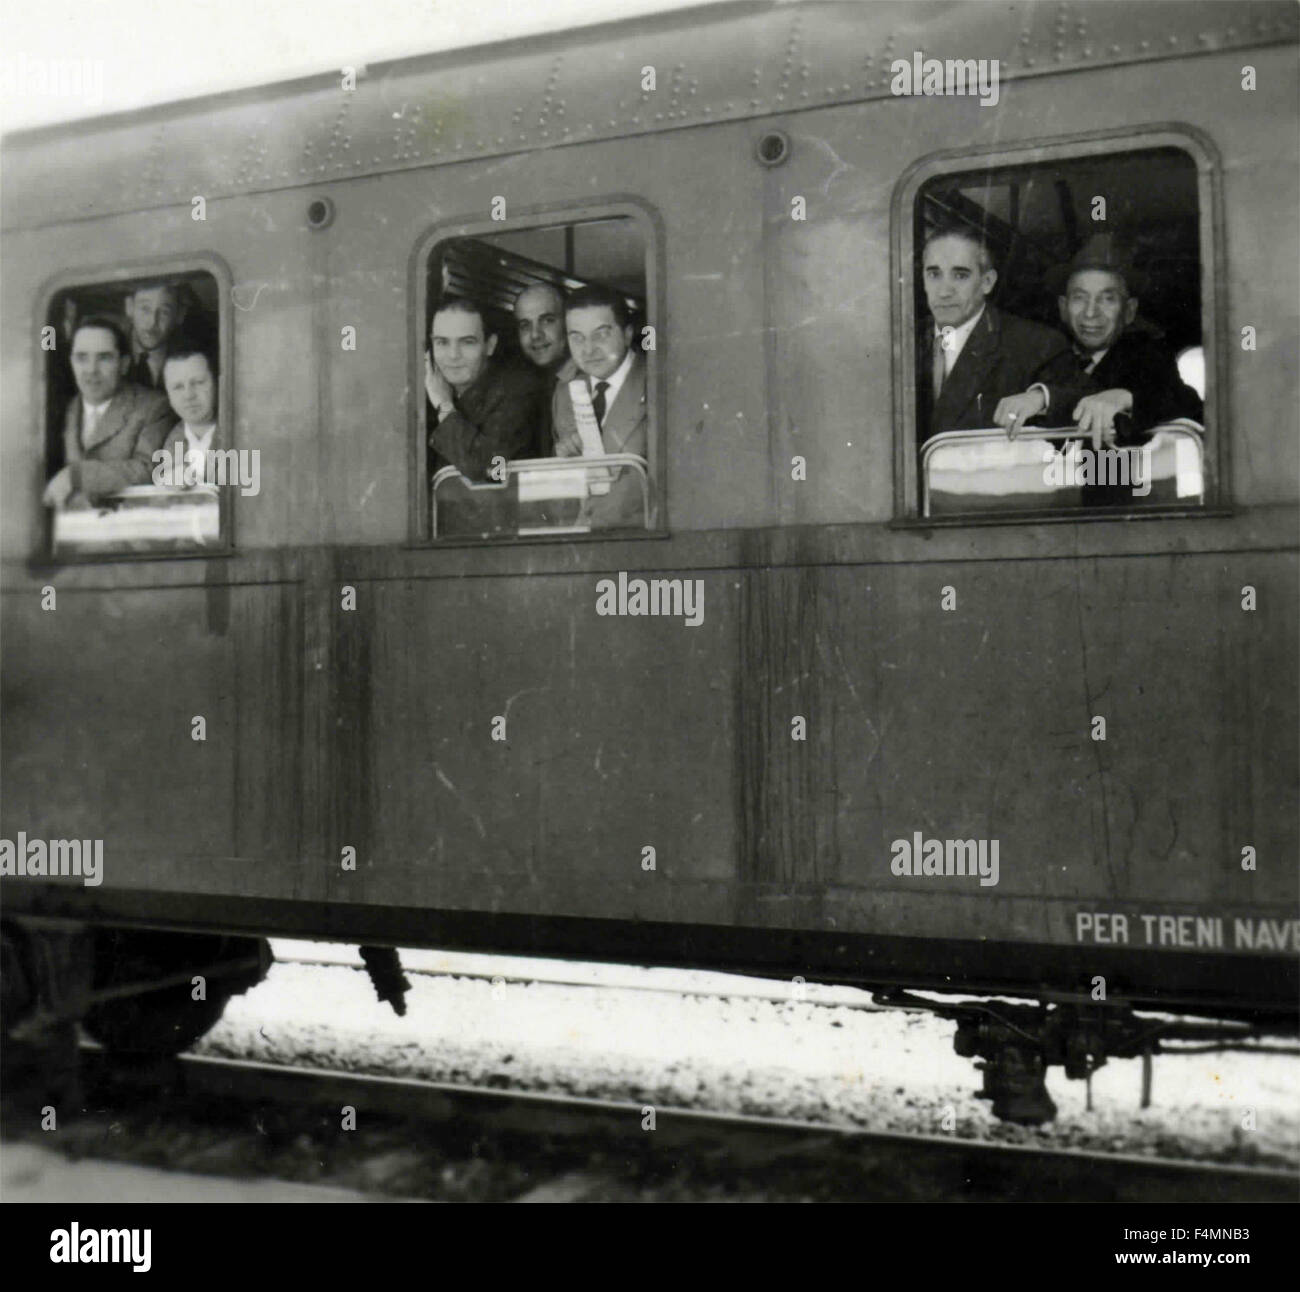 Les gens en regardant par la fenêtre d'un train, Italie Banque D'Images